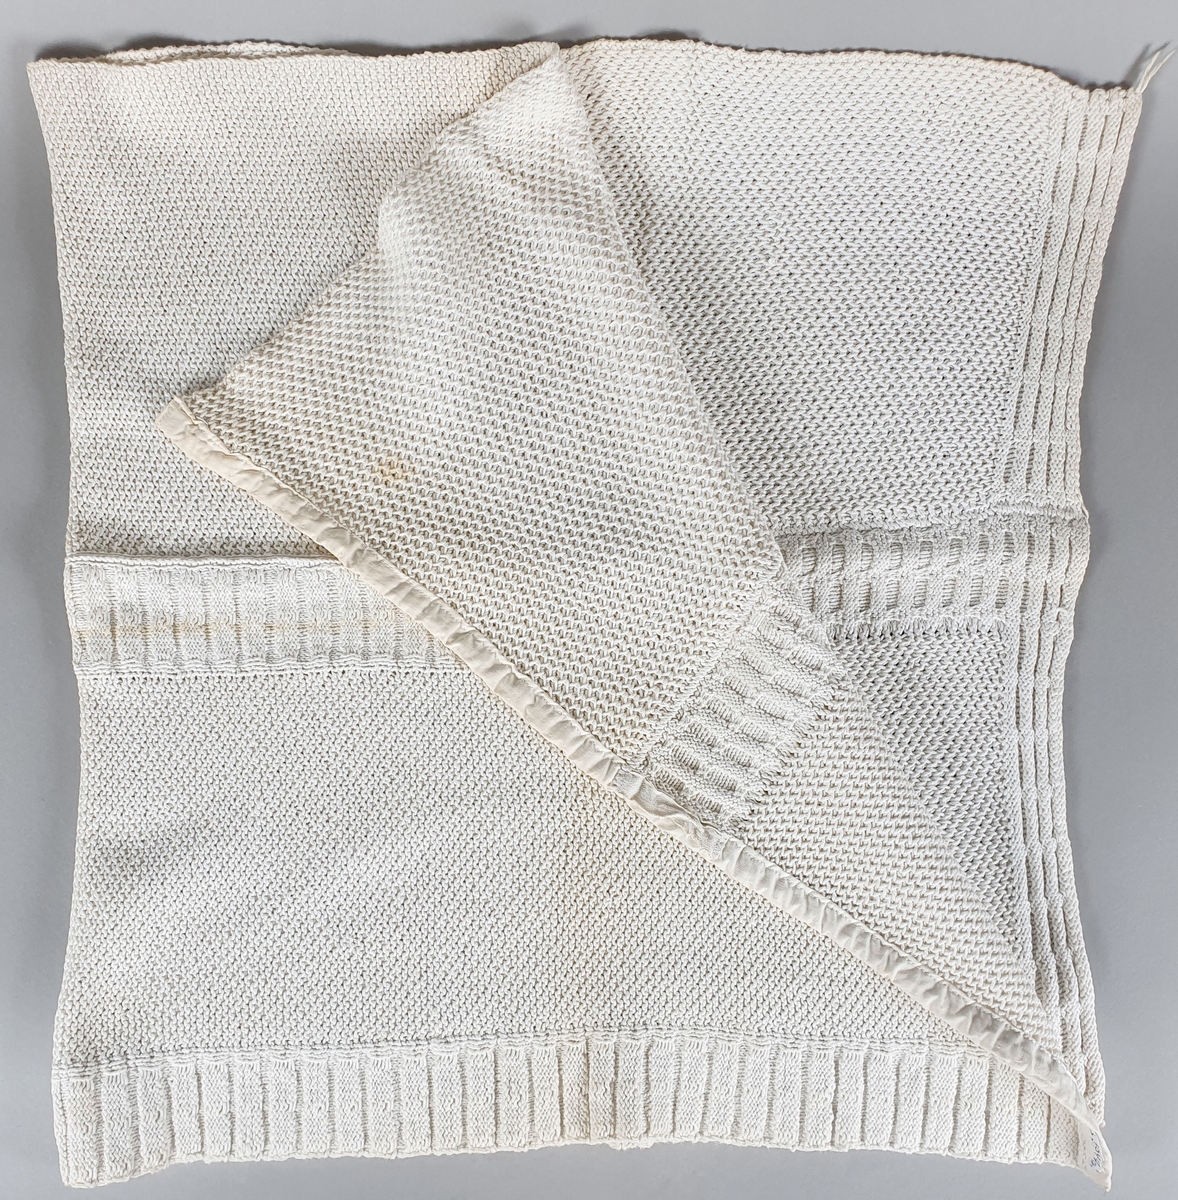 Tre strikkede kjøkkenhåndklær av bomull, kantet med bomullsbånd.